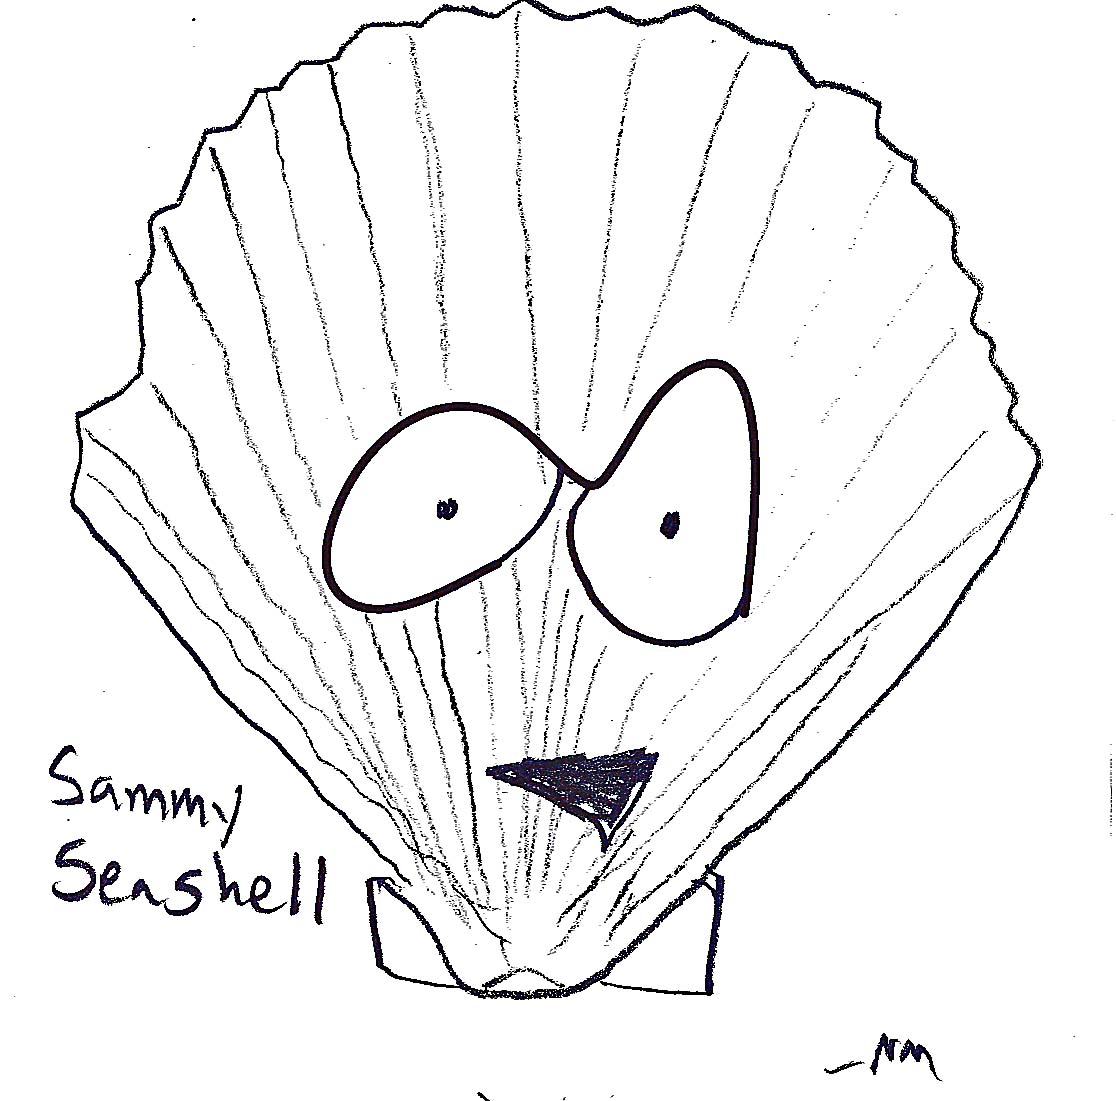 Sammy Seashell